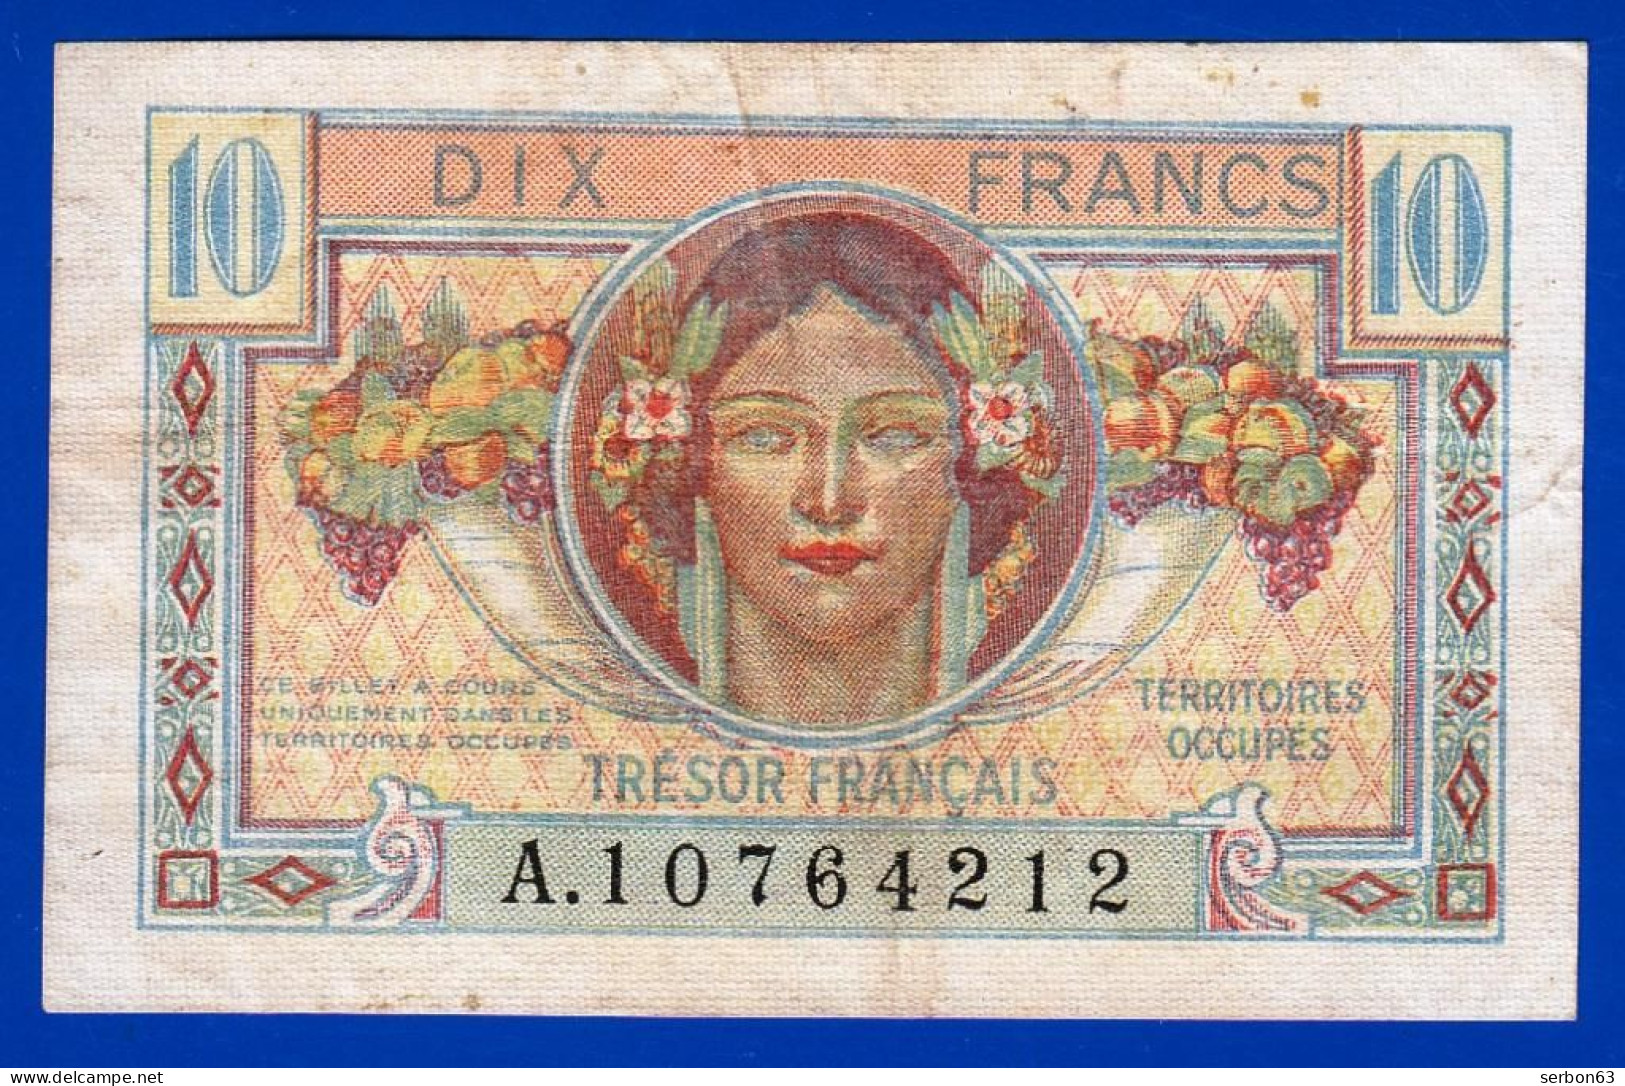 10 FRANCS BILLET DU TRÉSOR FRANÇAIS EMISSION POUR LES TERRITOIRES OCCUPES 1947 A. 10764212 Serbon63 - 1947 Tesoro Francés